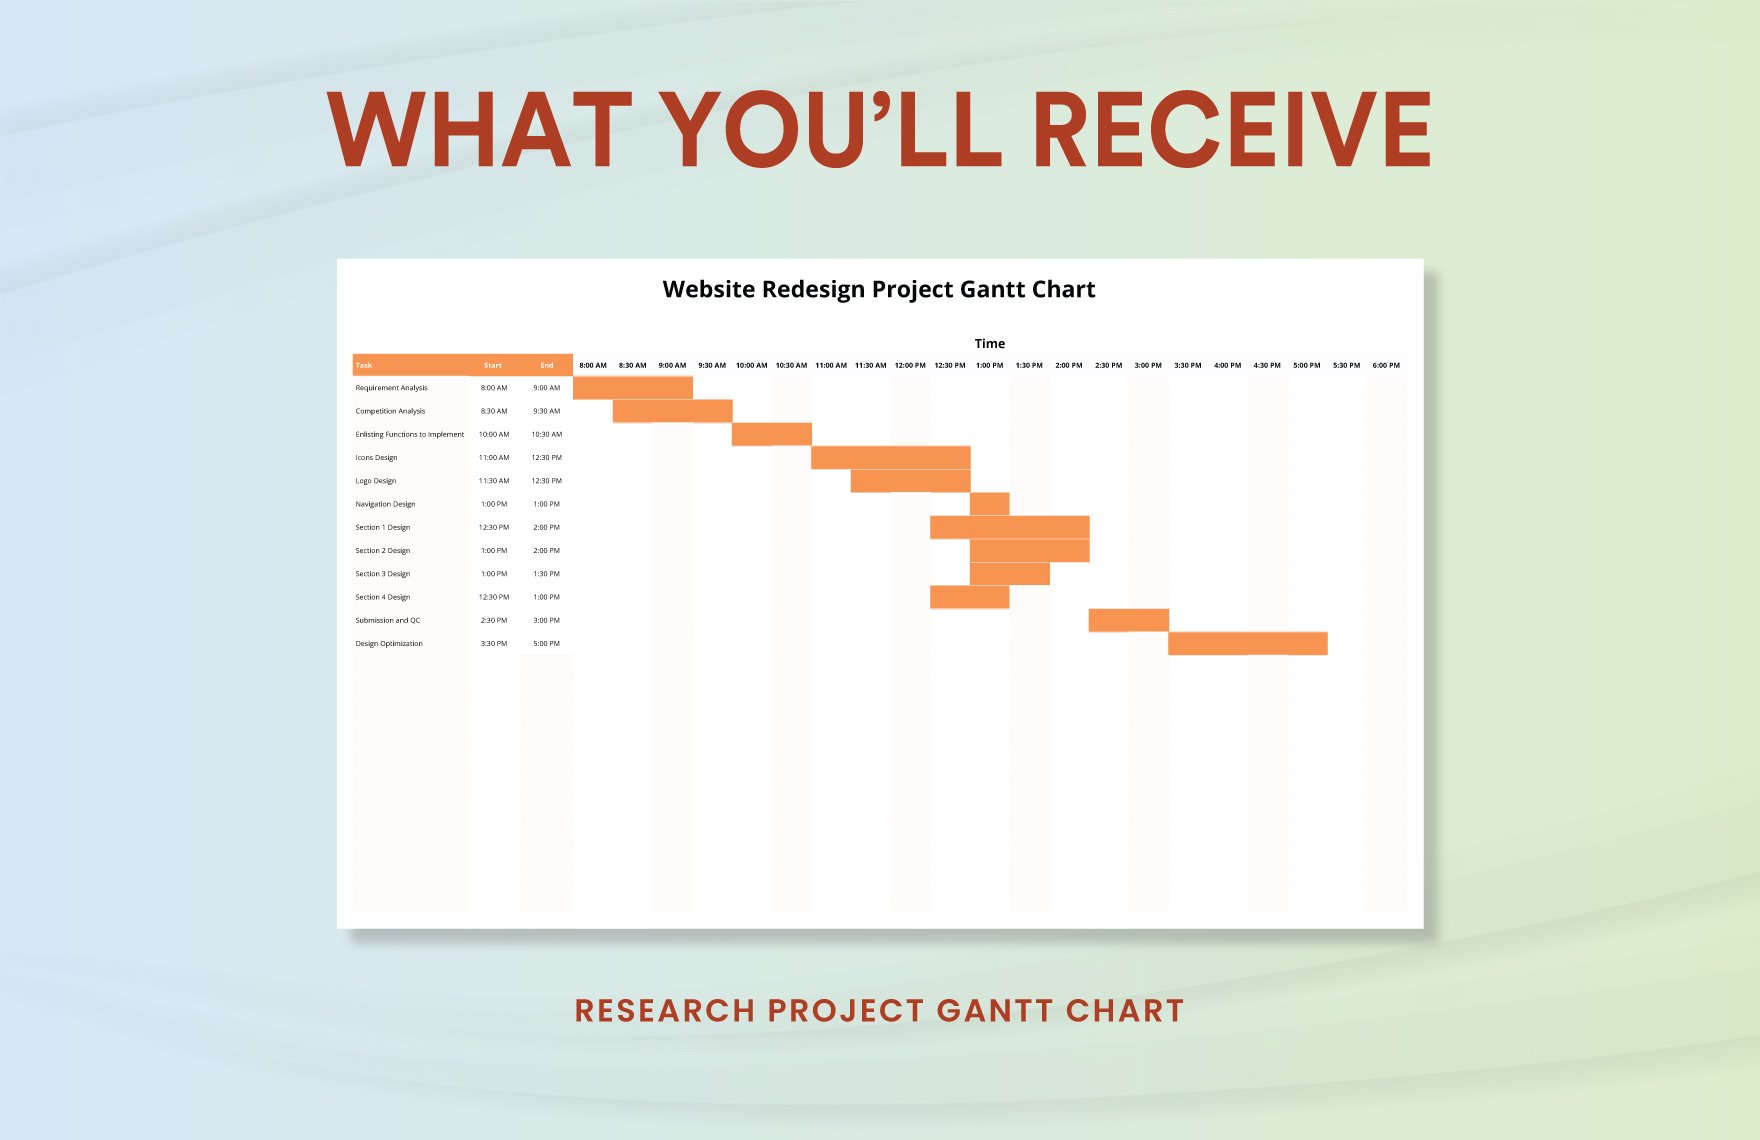 Website Redesign Project Gantt Chart Template